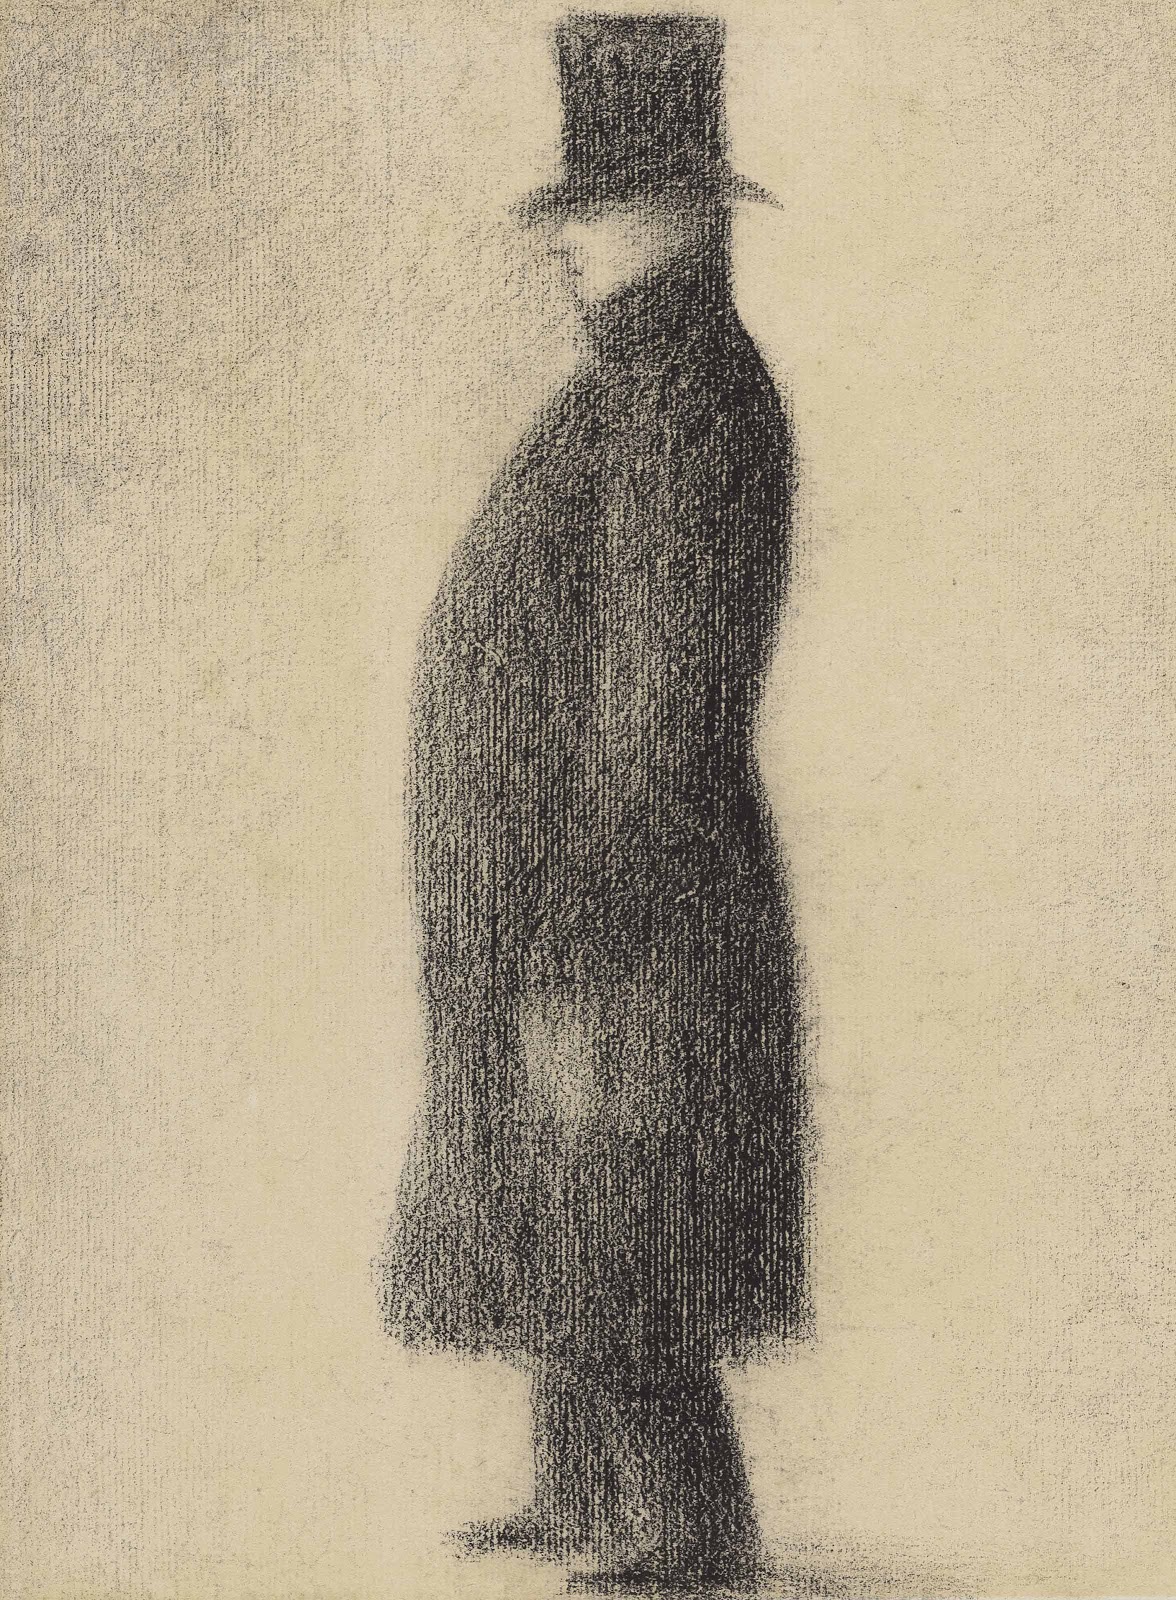 Georges+Seurat-1859-1891 (44).jpg